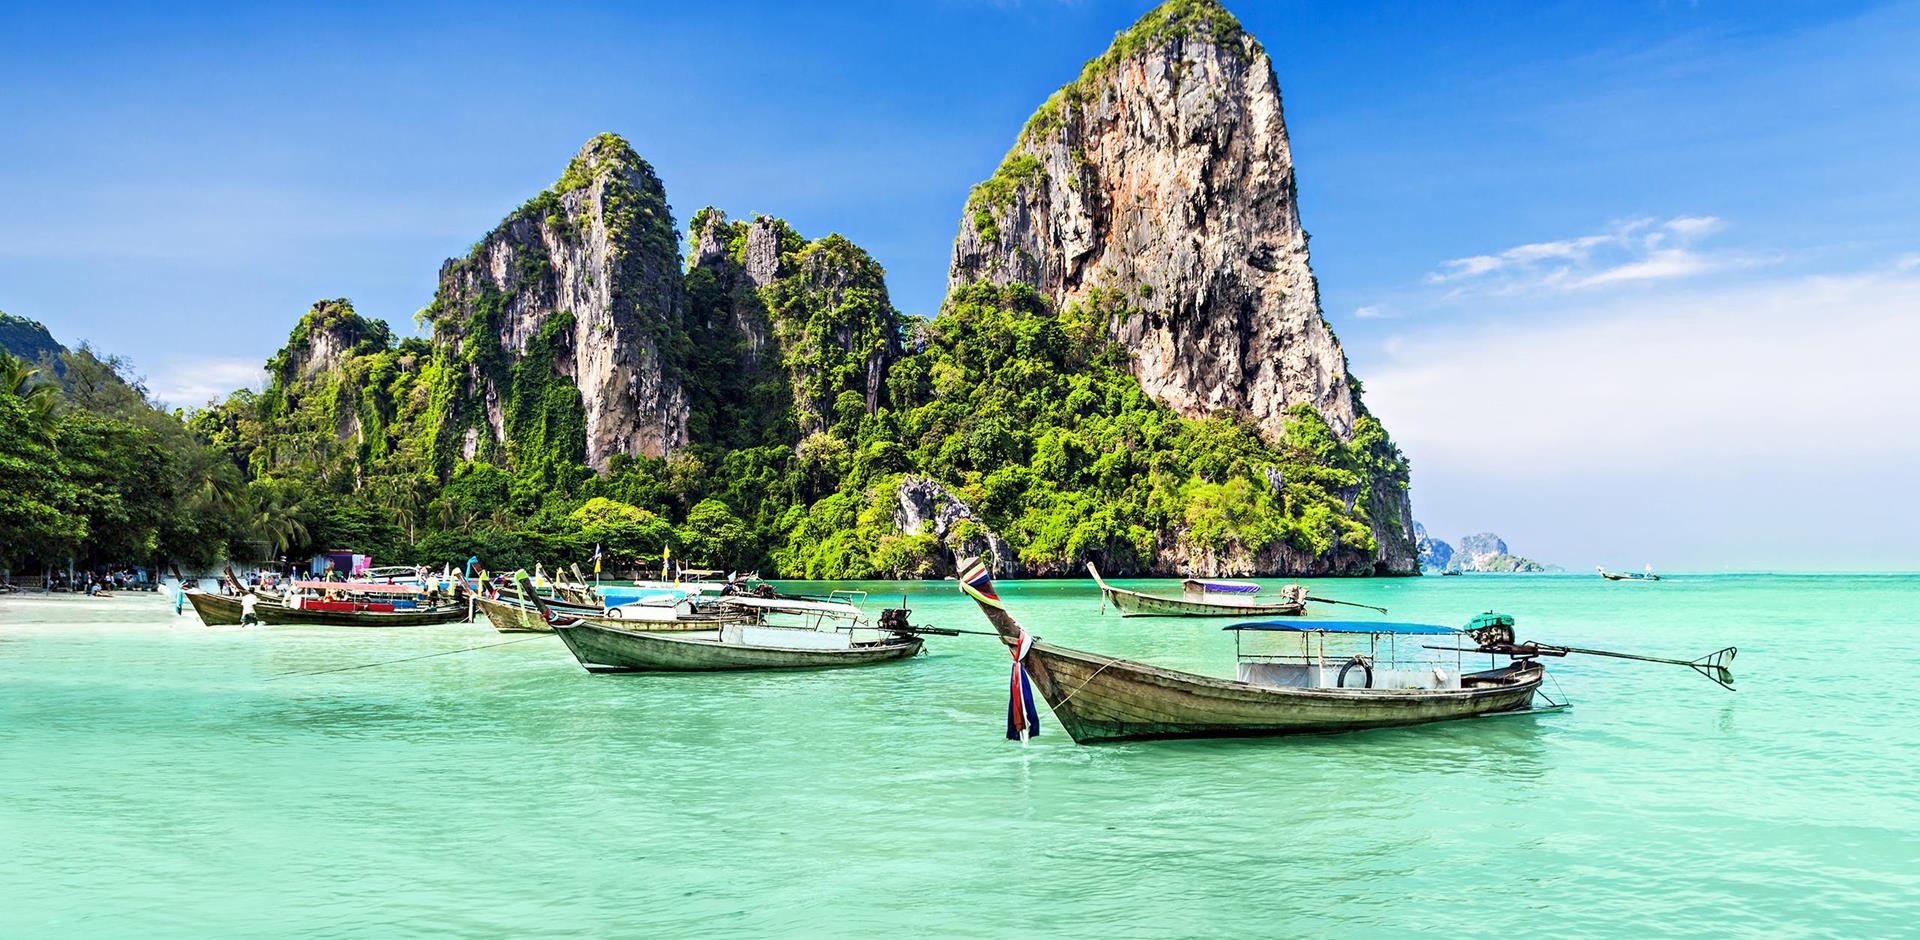 تور پوکت تایلند | بهترین نرخ هتل و هواپیما + ویزا